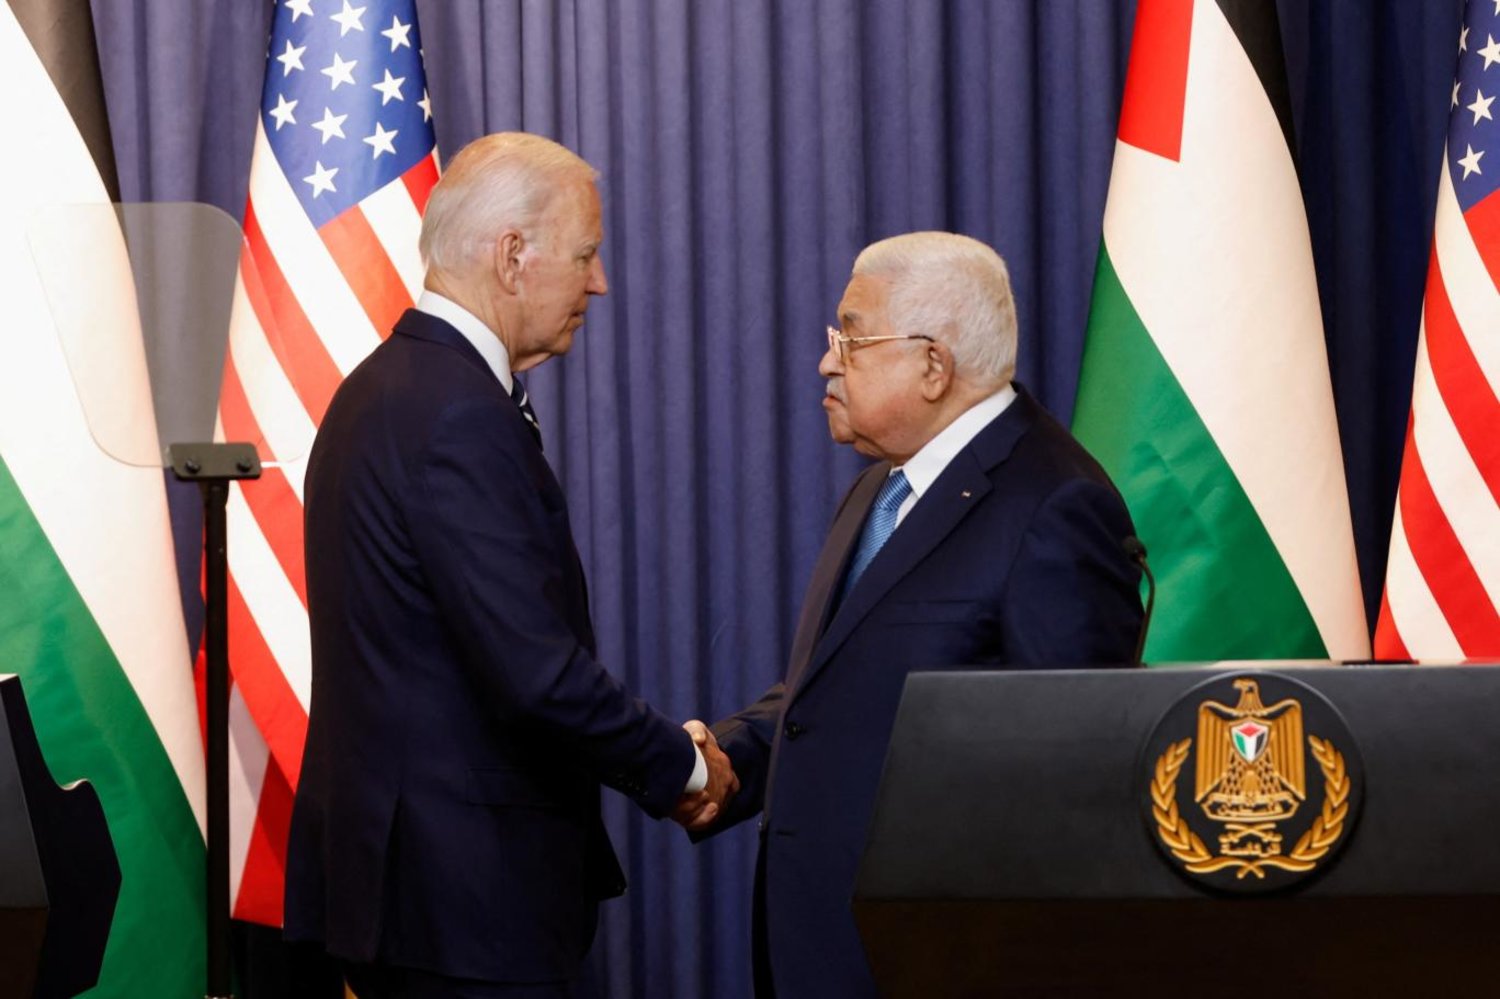 Abbas, ABD aracılığıyla yürütülen ve savaş nedeniyle askıya alınan İsrail-Suudi Arabistan normalleşme görüşmelerini eleştirmişti (Reuters)